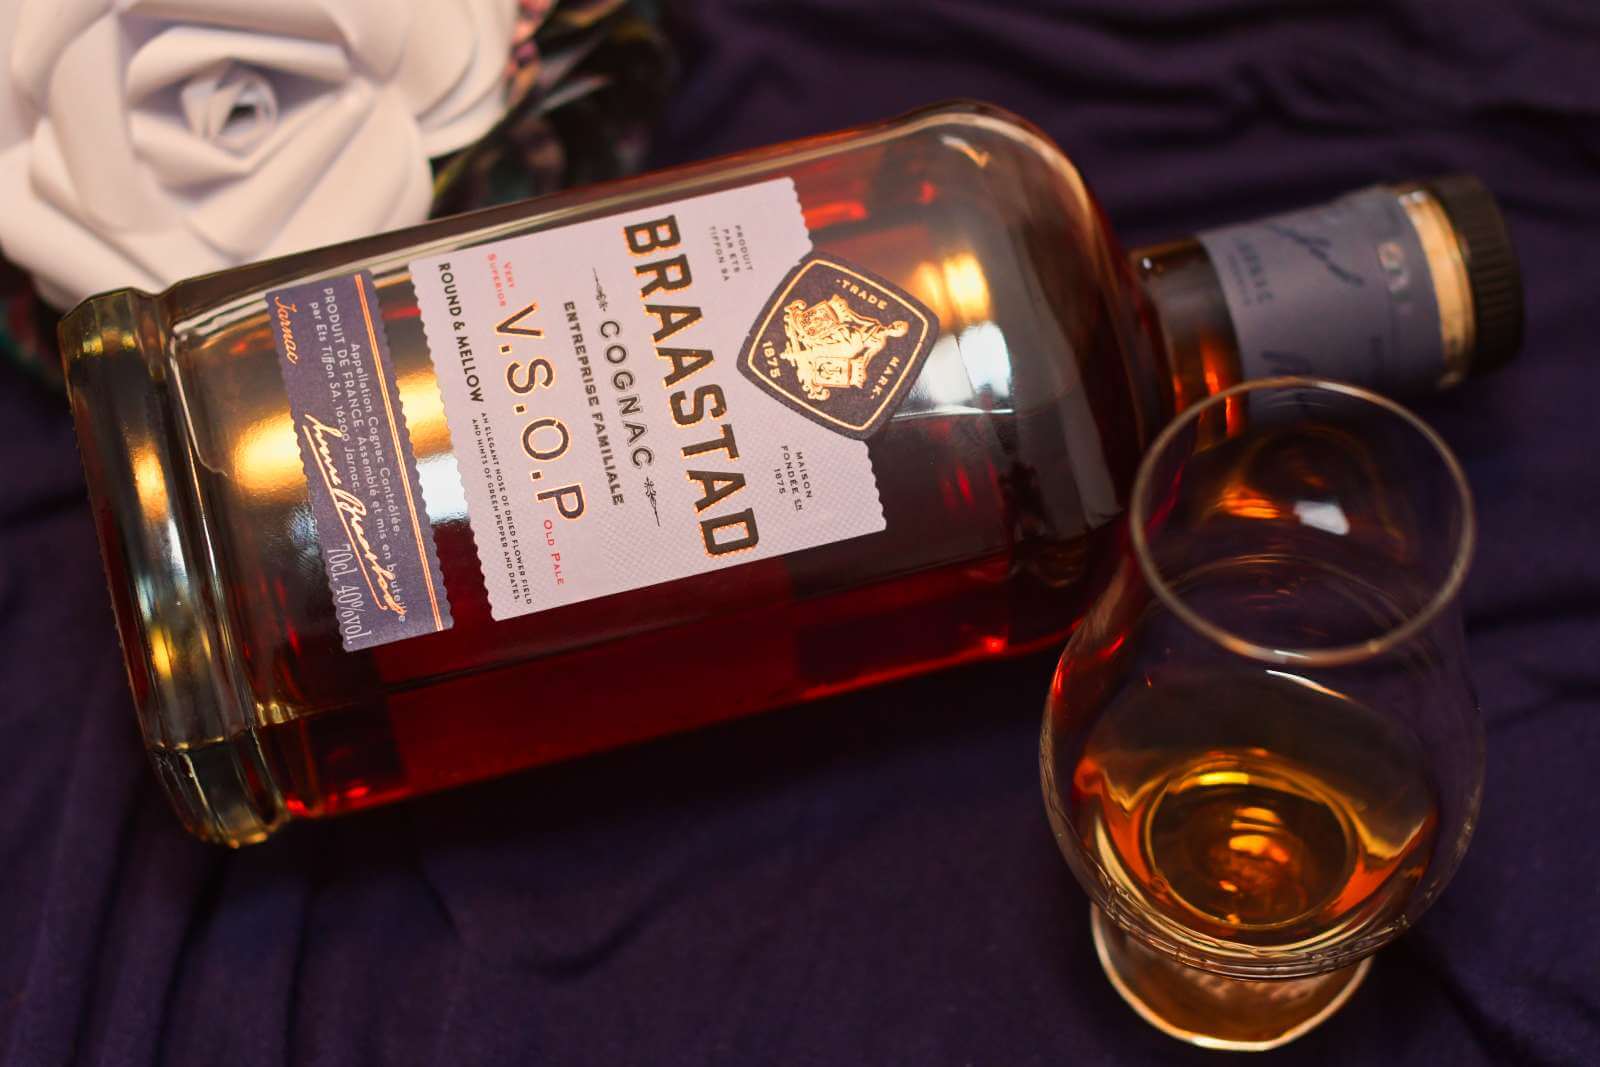 LeGnac Braastad VSOP Cognac Review